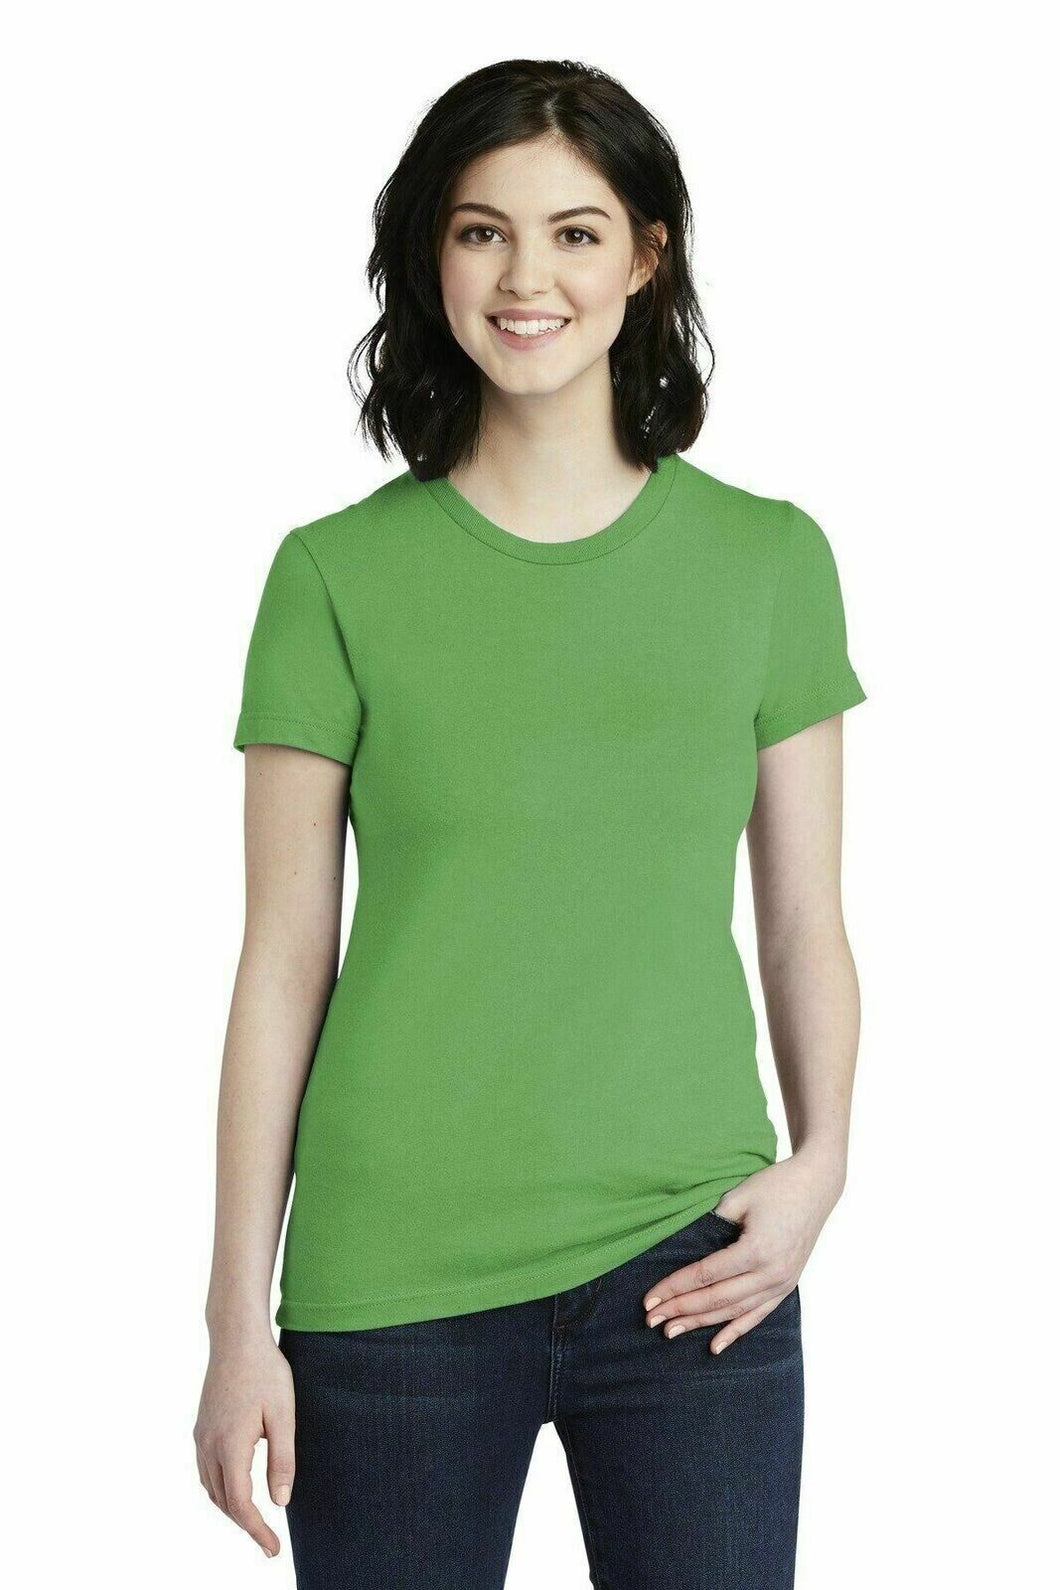 Women's Classic Short Sleeve T-Shirt by American Apparel, Tea Grass Green - New